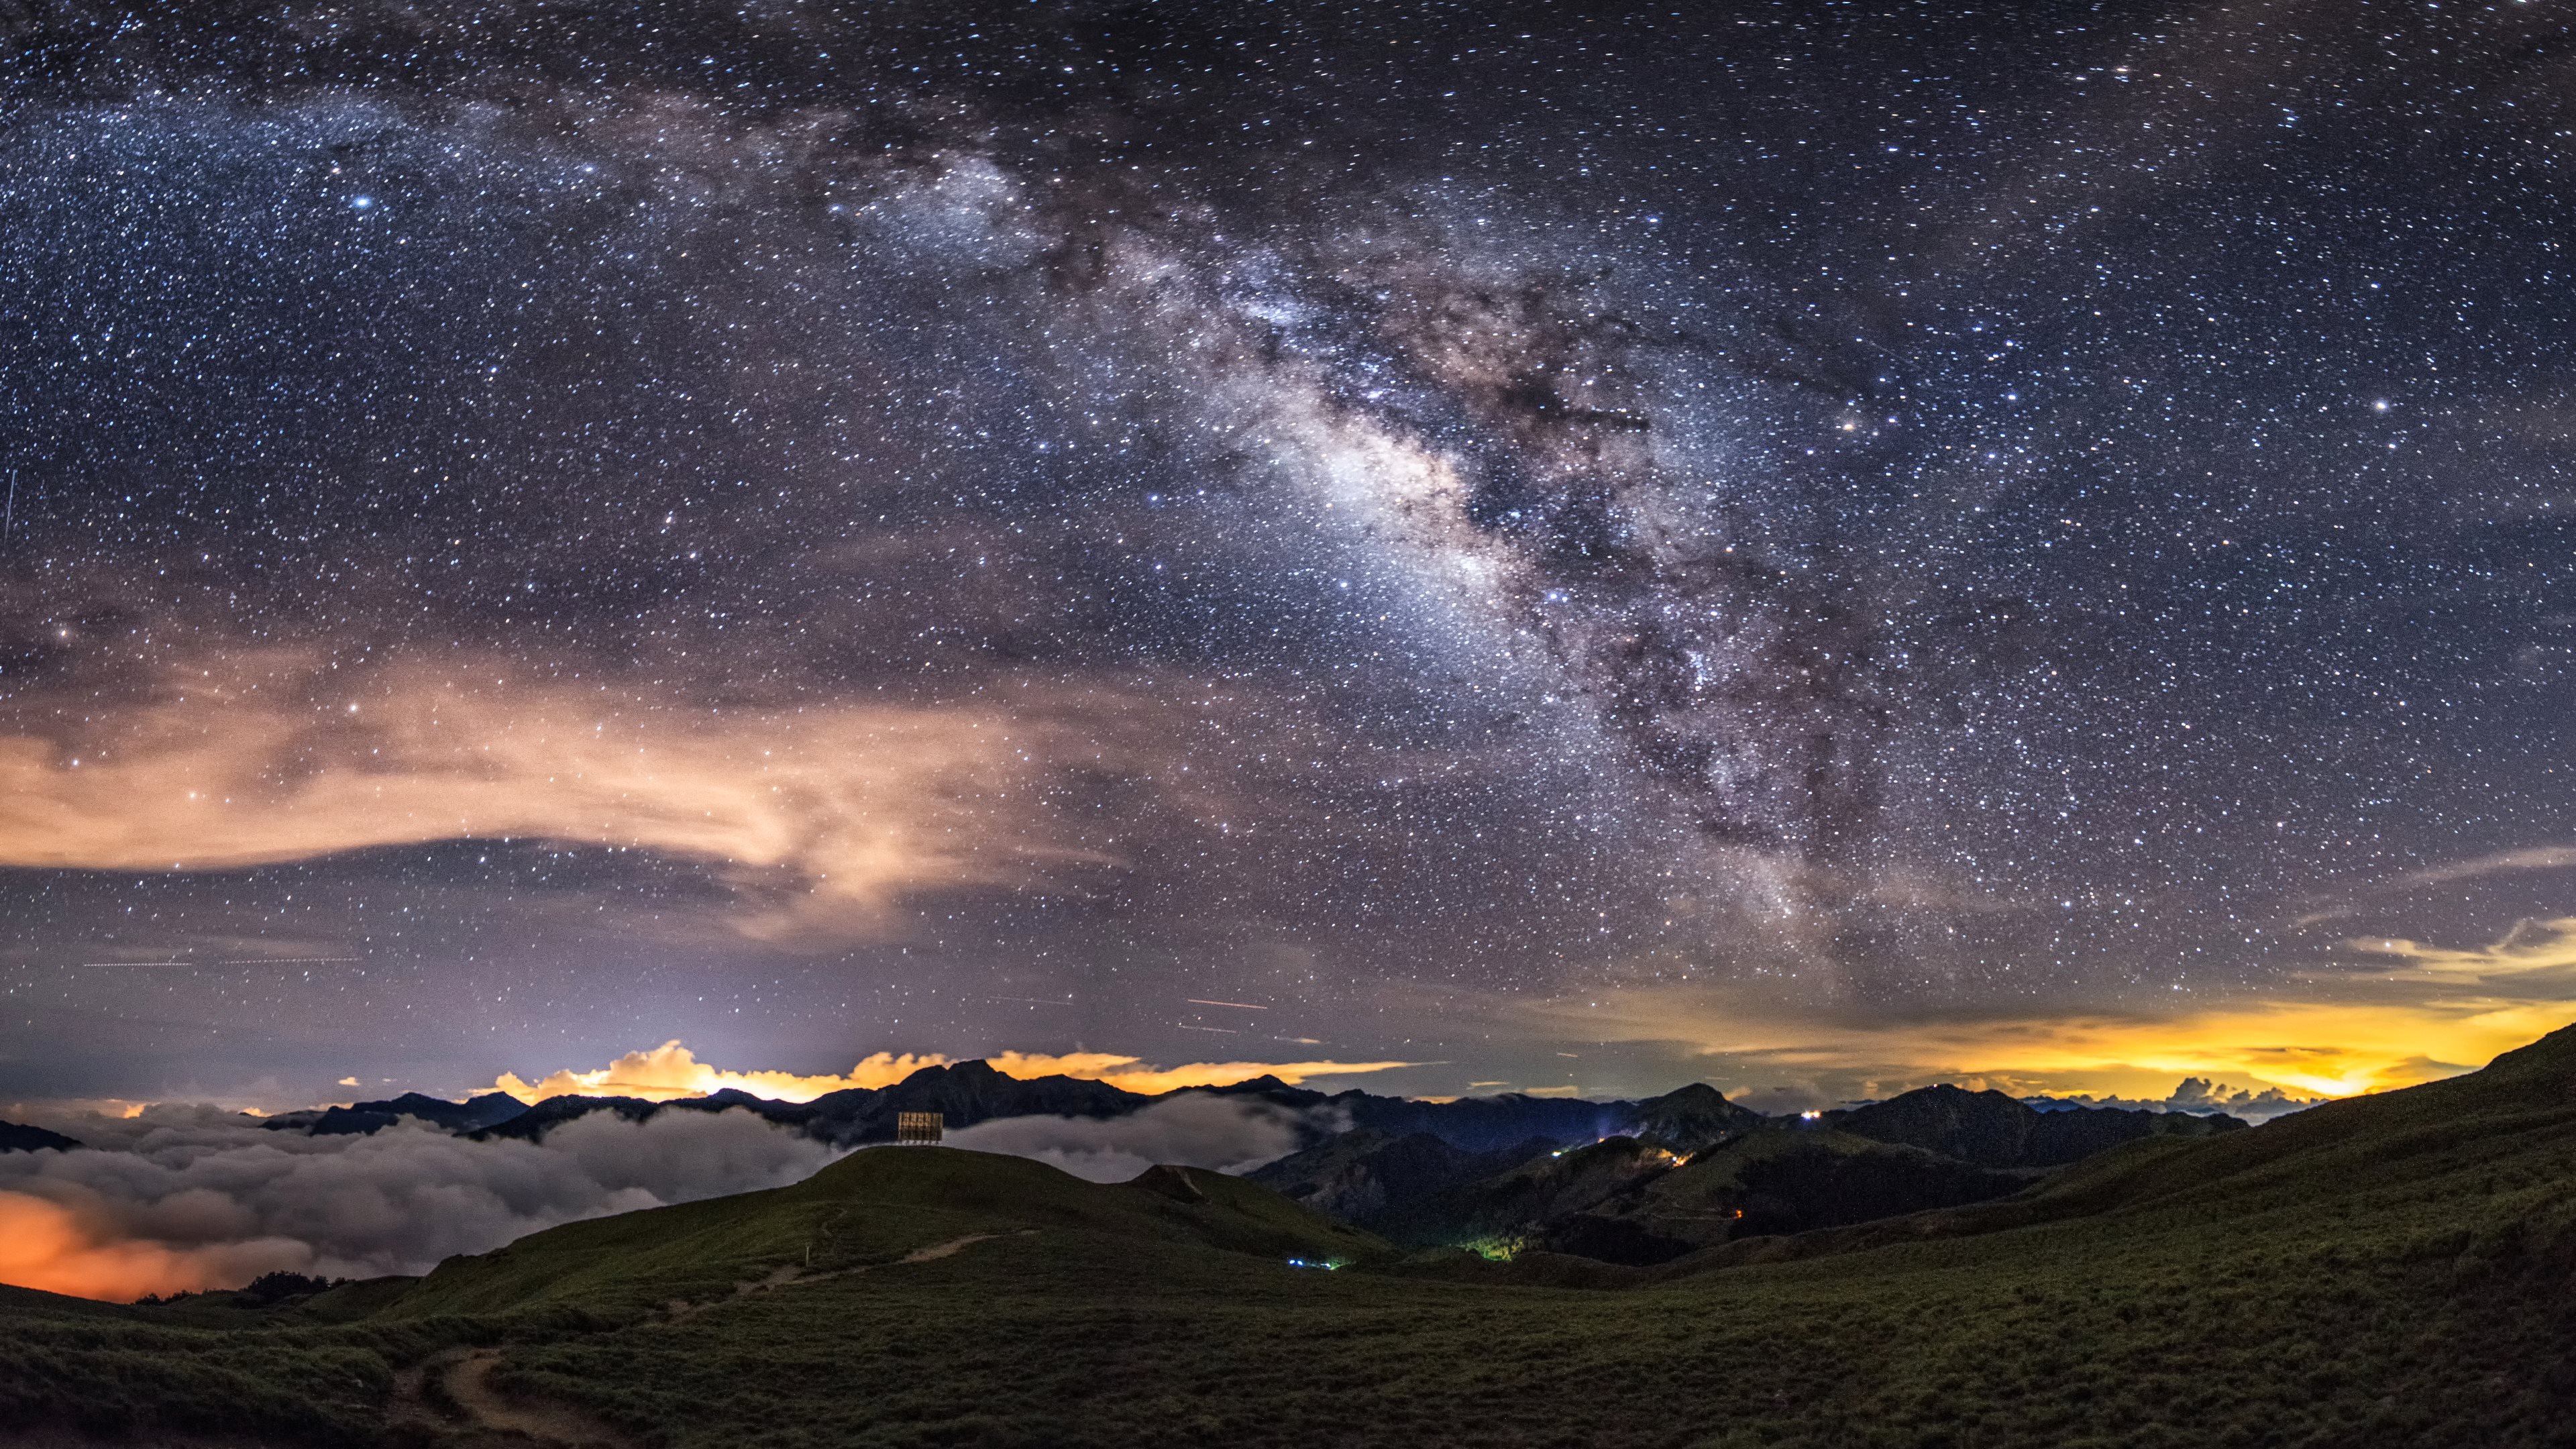 Milky Way on the night sky